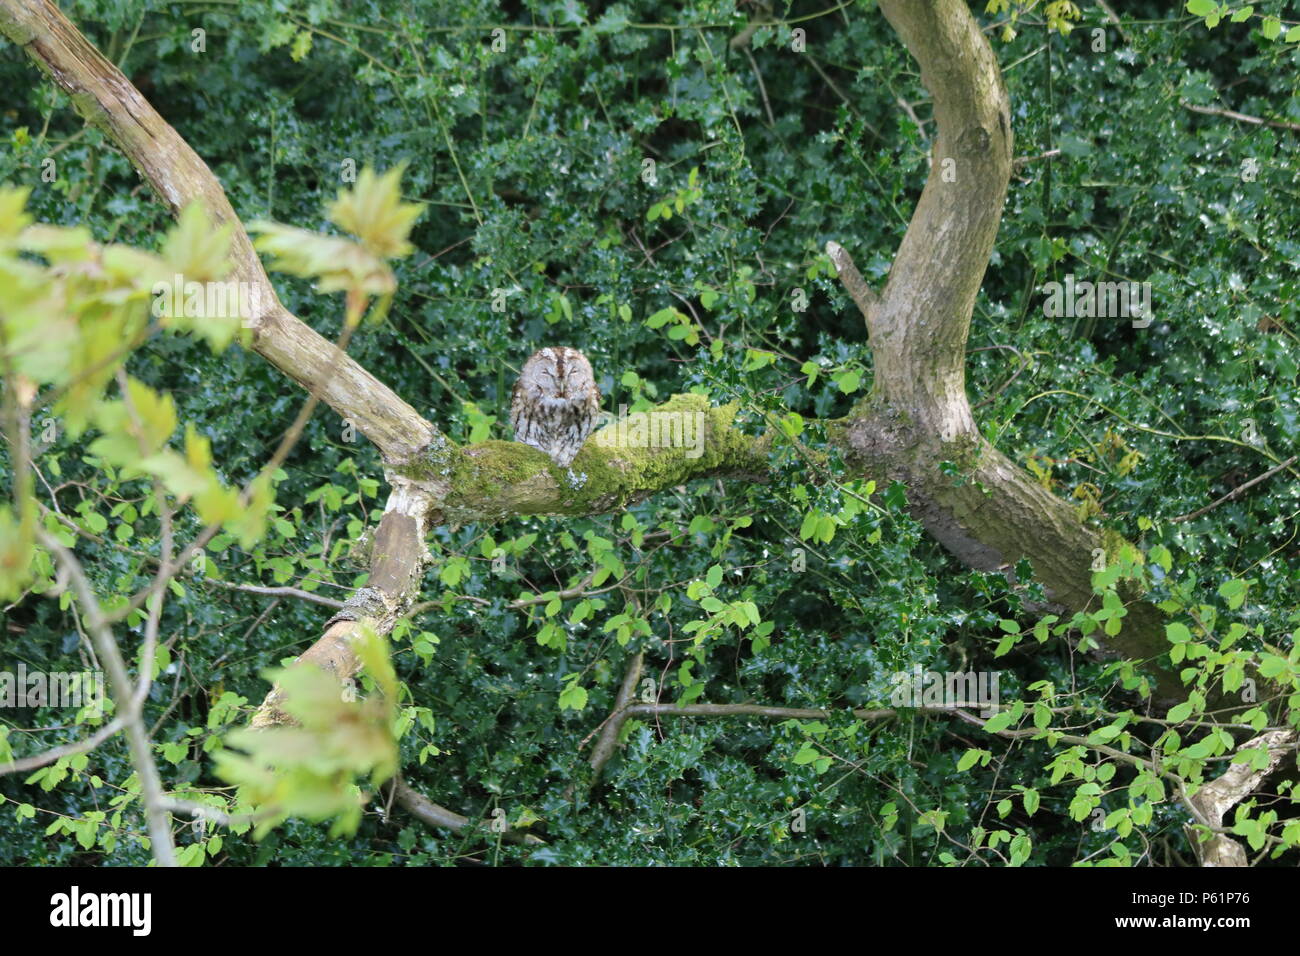 Waldkauz oder braune Eule (Strix aluco), der auf einem Baum gehockt, North West England, Vereinigtes Königreich. Stockfoto